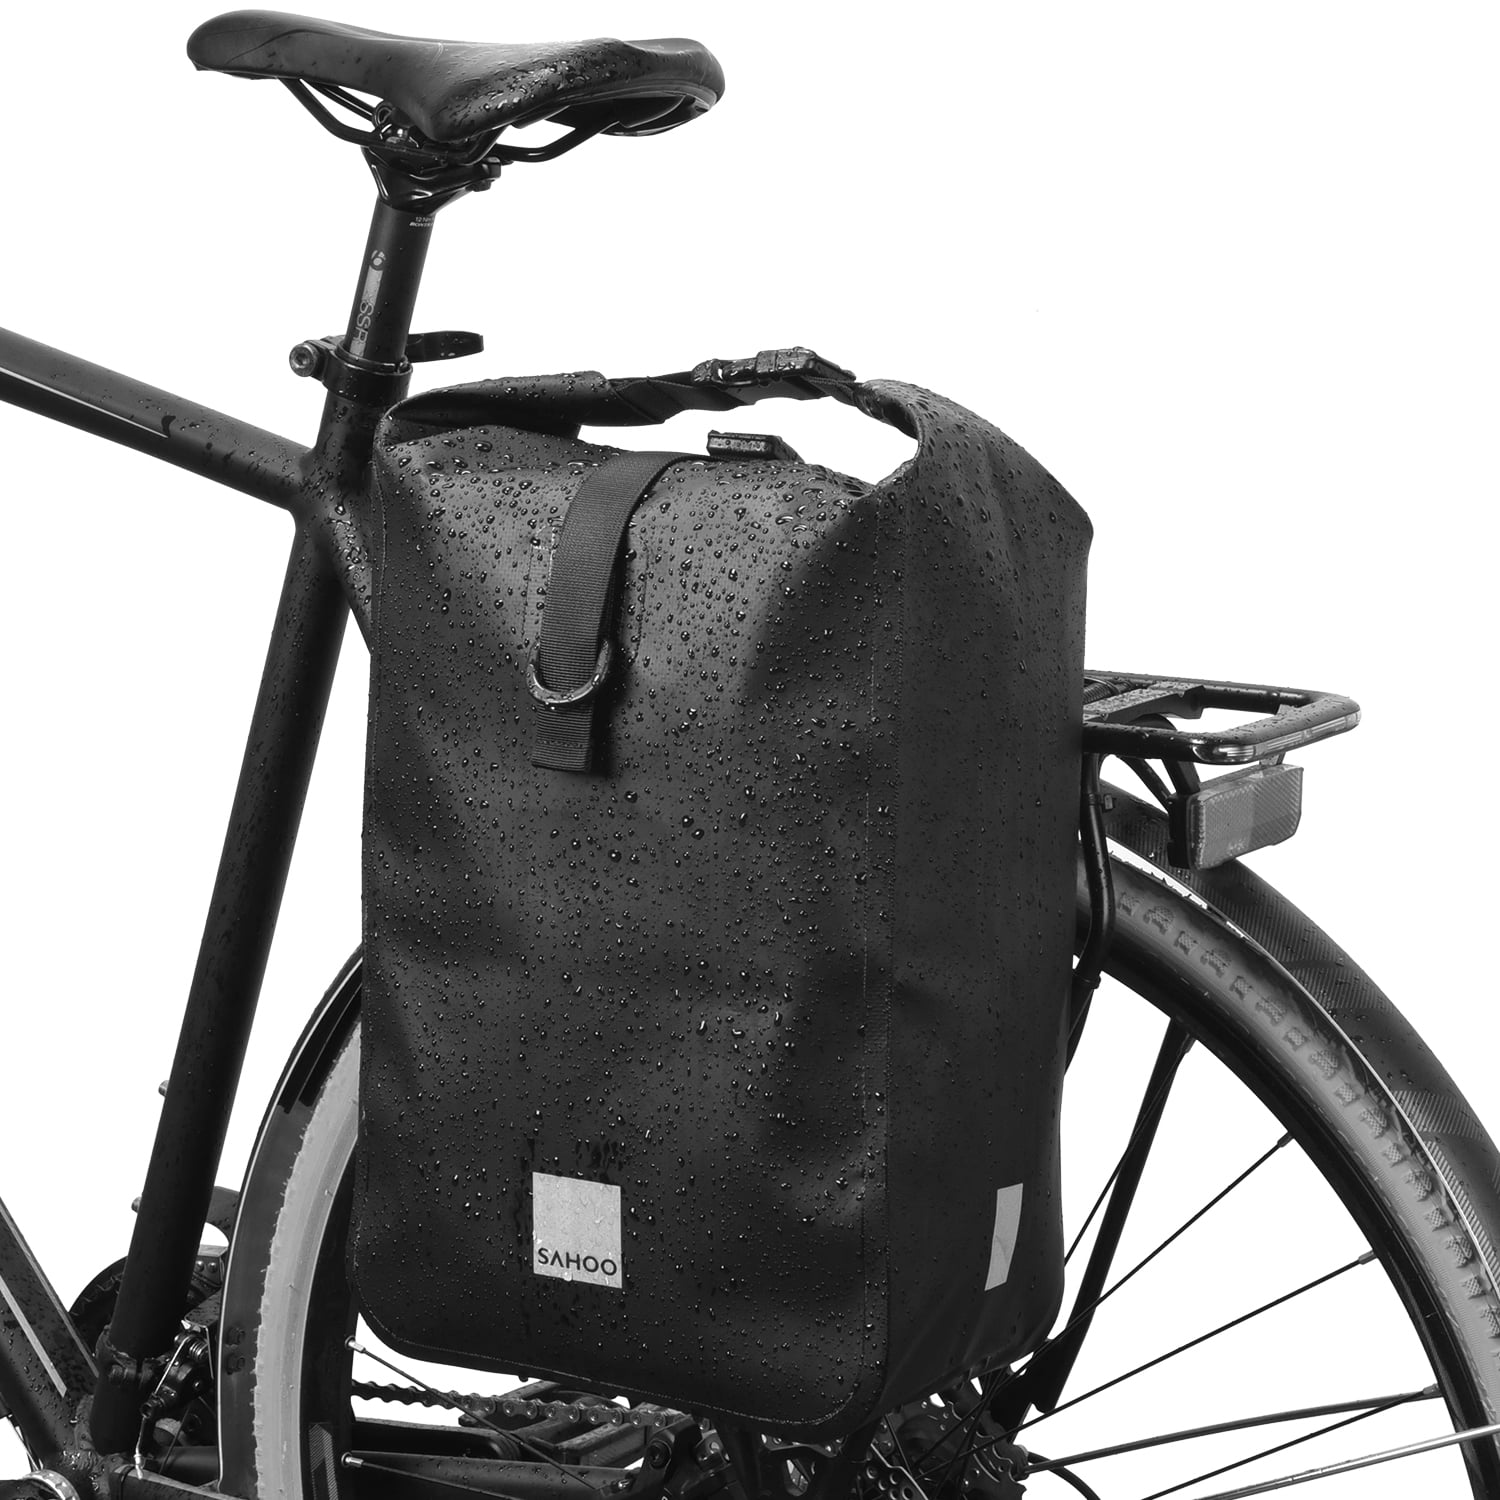 Cycling Bicycle Rear Seat Storage Trunk Bag Bike Pannier Rack Waterproof Handbag